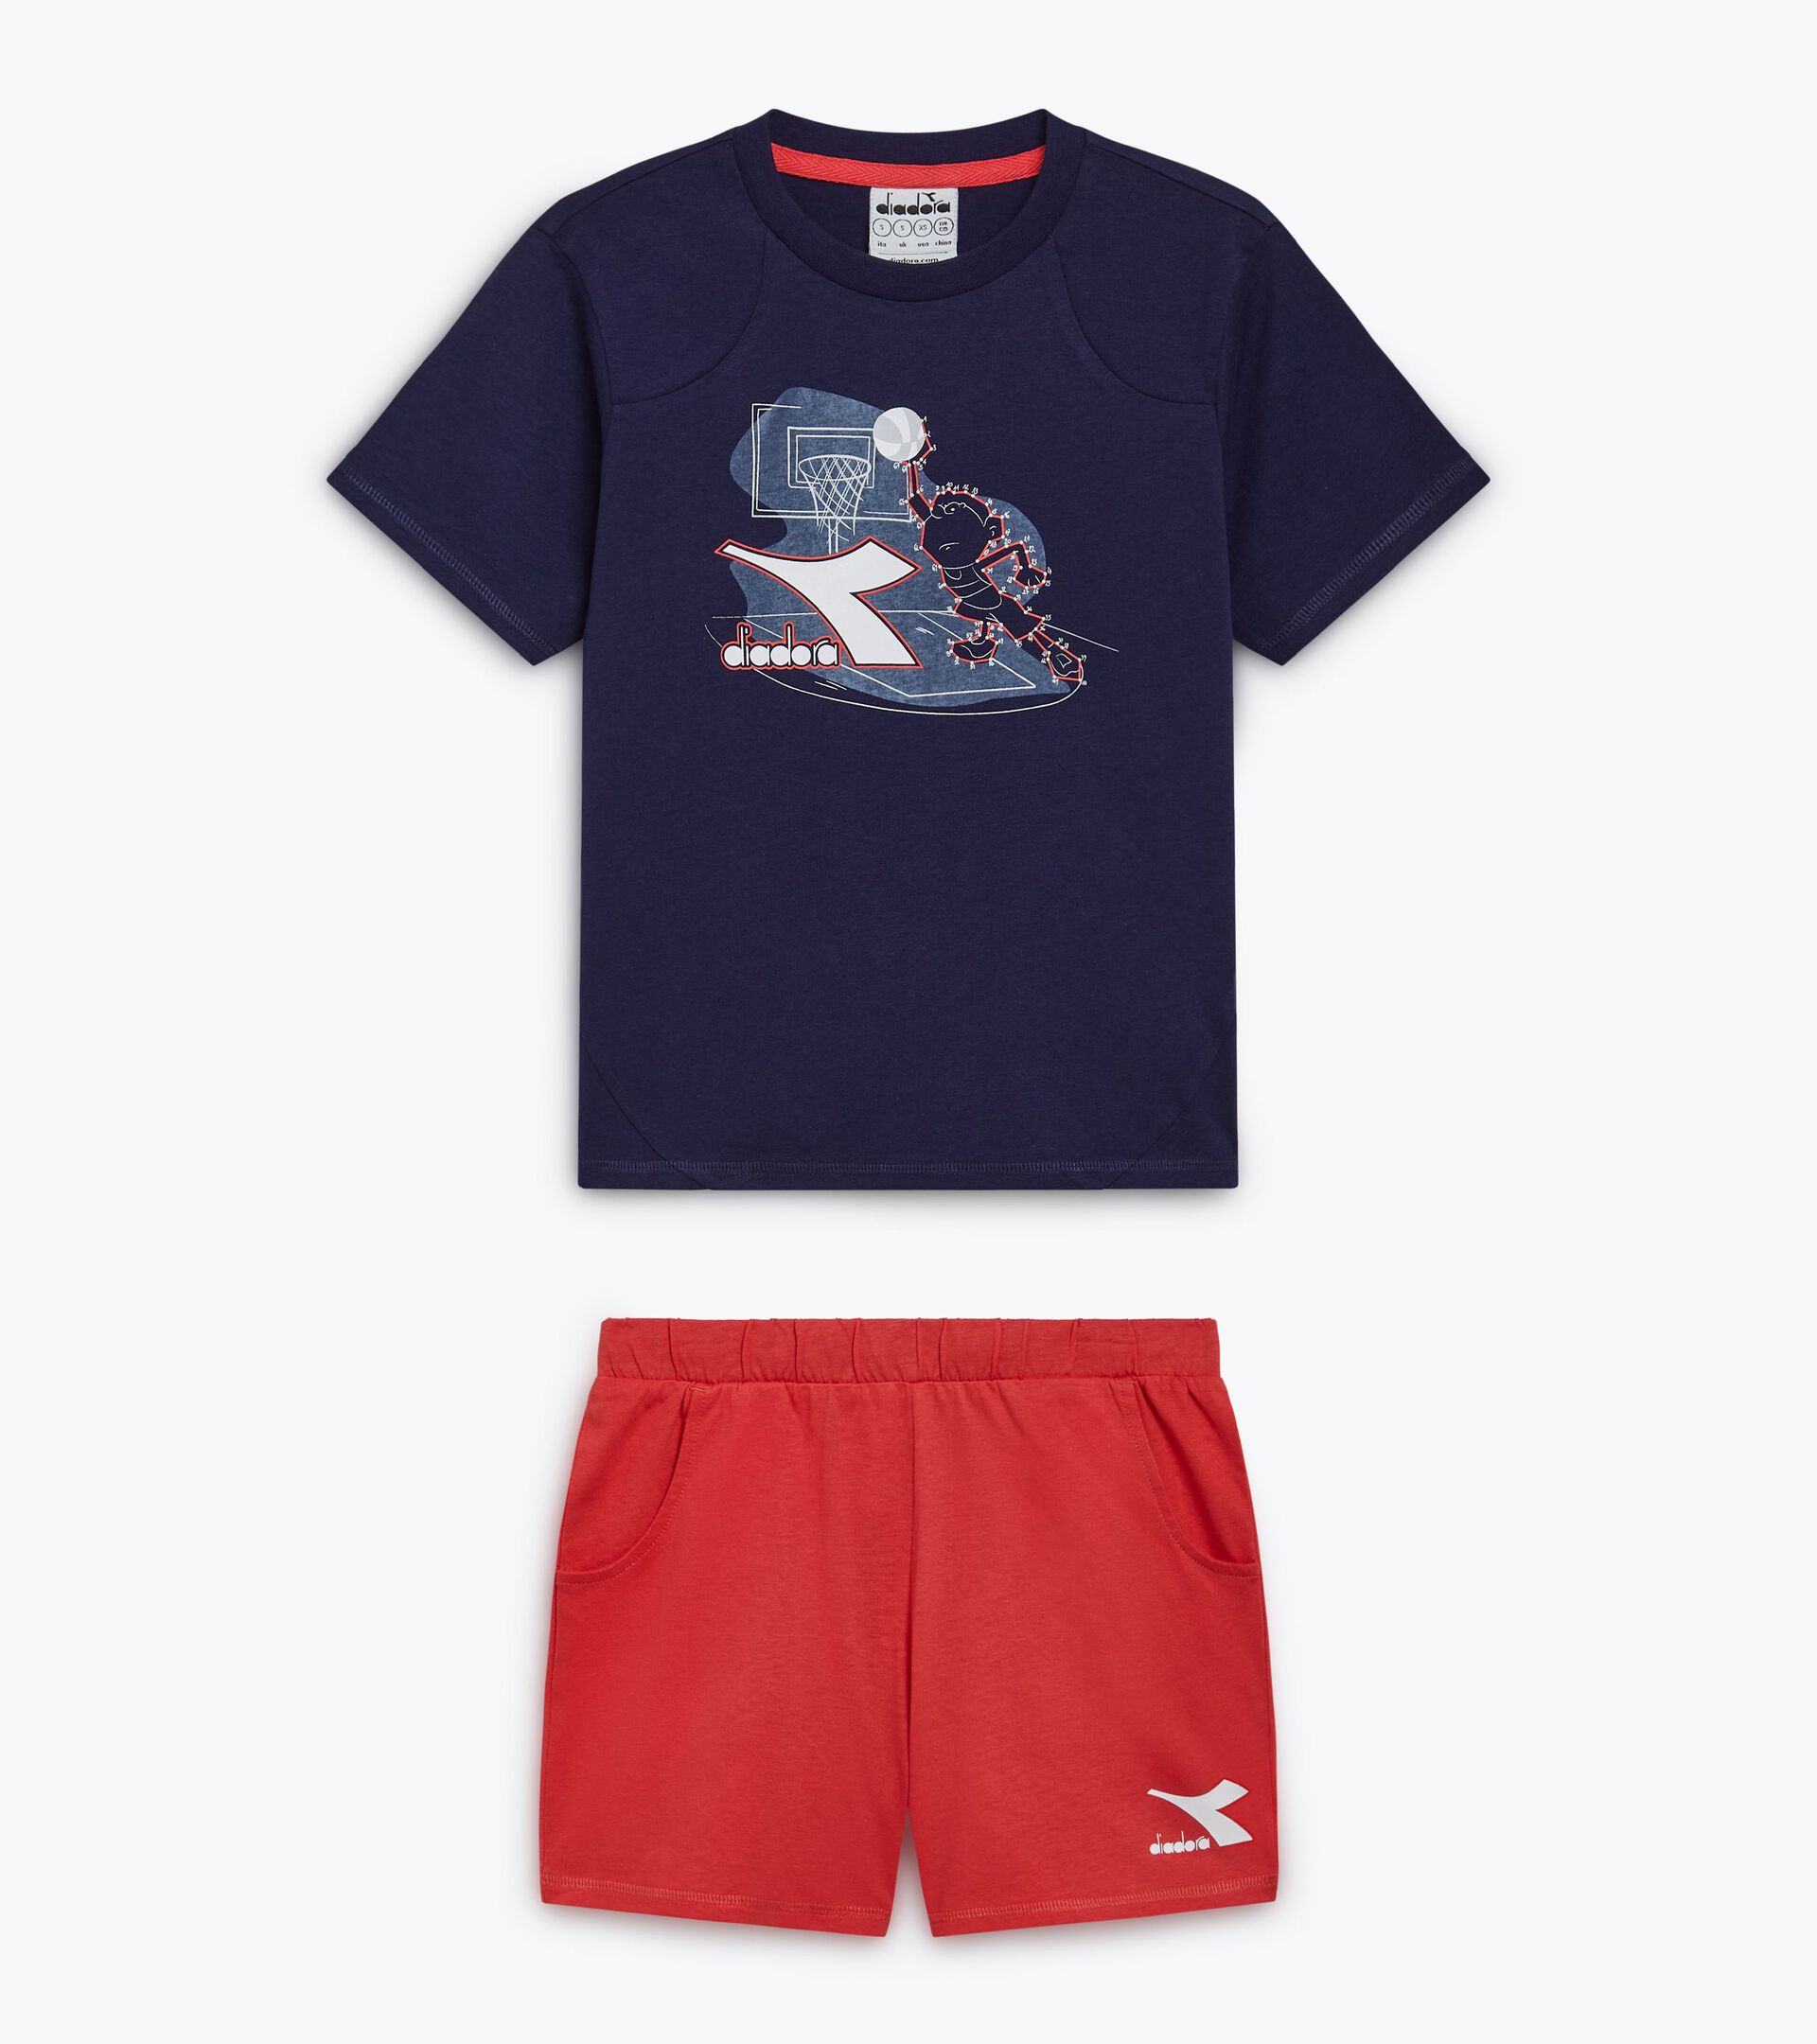 Conjunto deportivo - Camiseta y pantalones cortos - Niños y adolescentes
 JB. SET SS RIDDLE AZUL CHAQUETON - Diadora